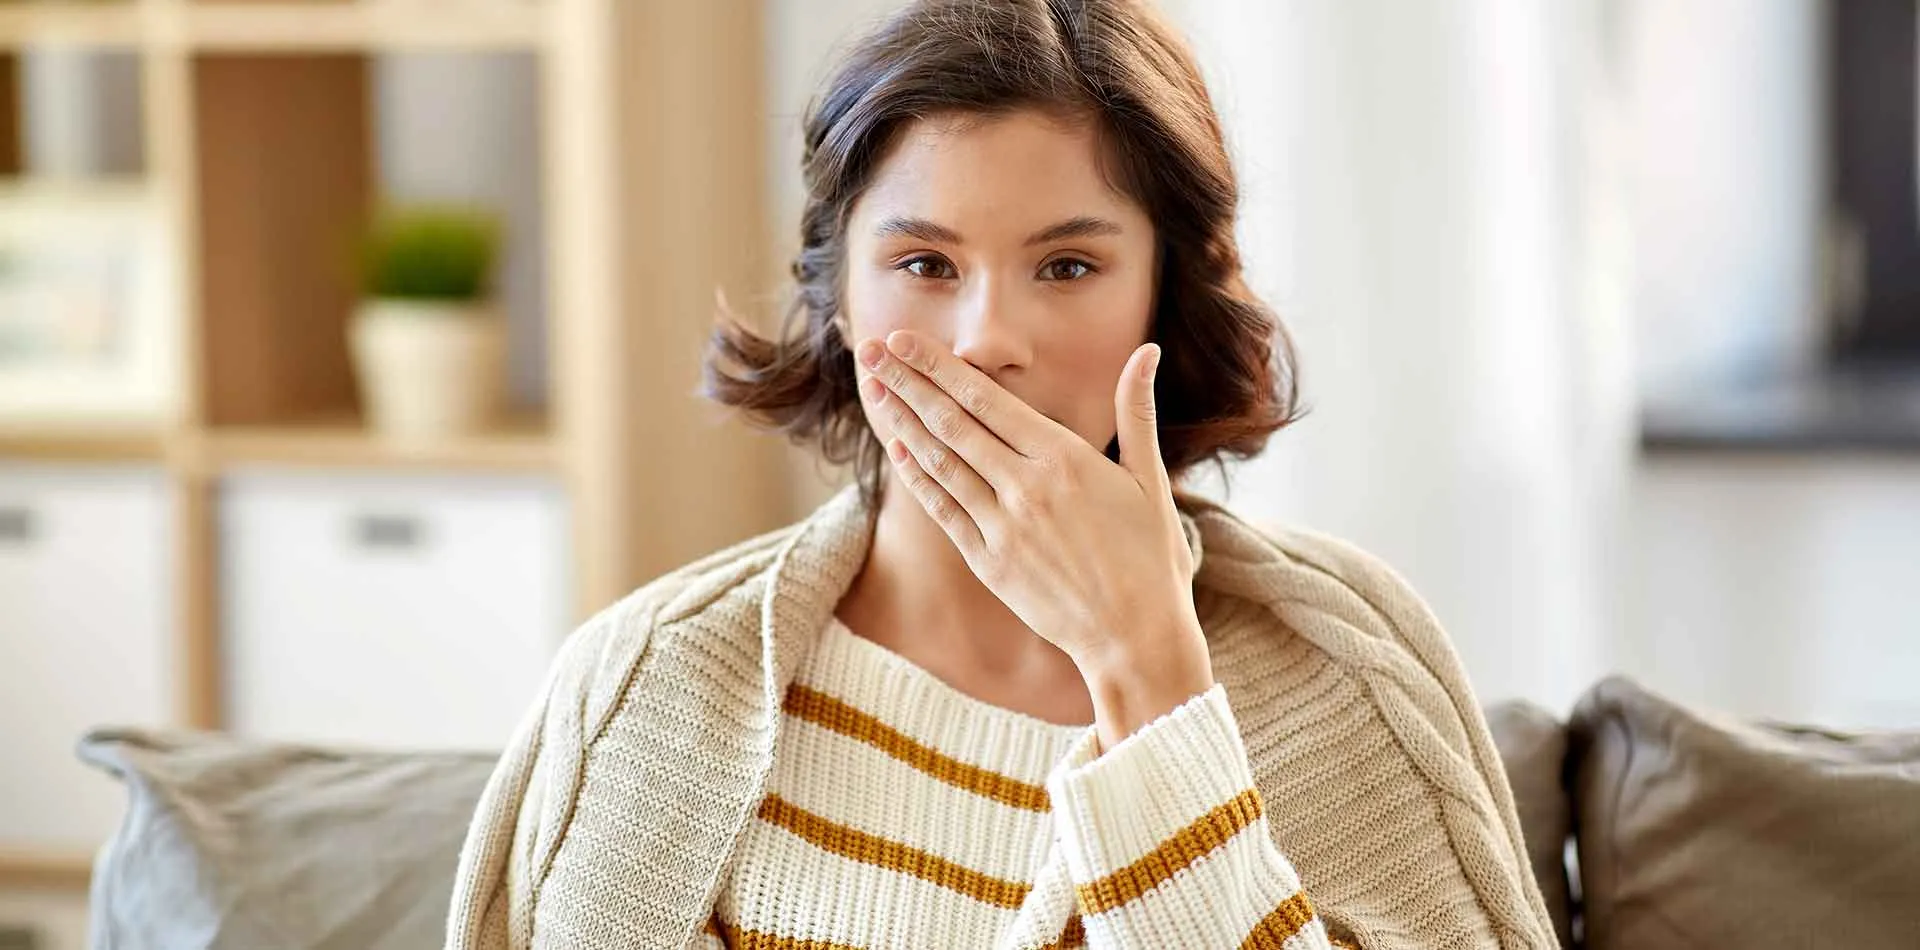 أسباب و علاج رائحة الفم الكريهة